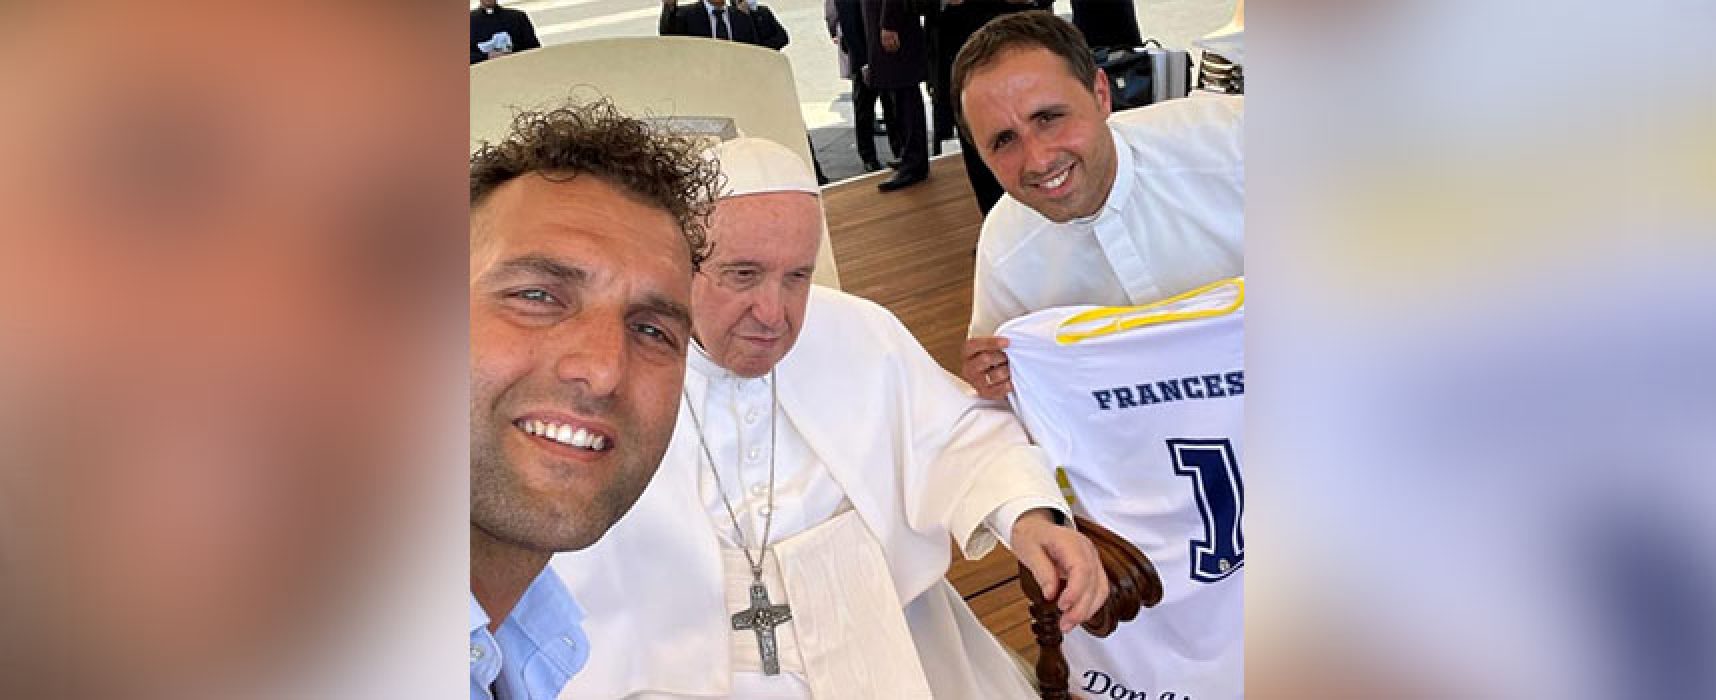 Don Uva Calcio compie 50 anni, delegazione dona maglia a Papa Francesco